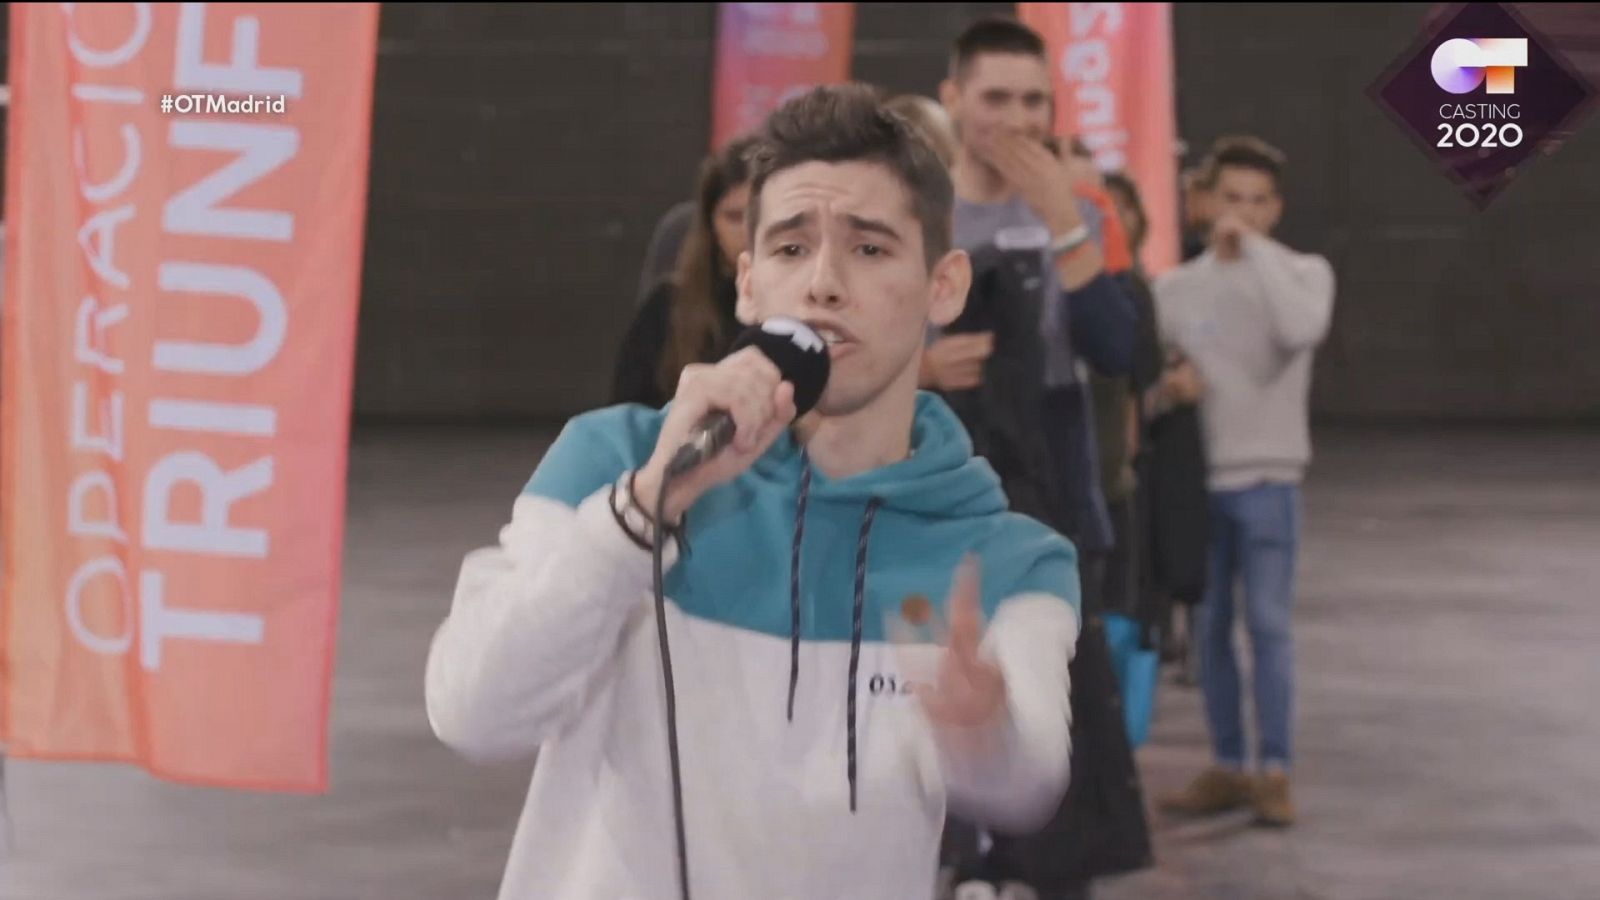 Un chico canta "Ahora está mejor",, de Isa P en la Fase 1 del casting OT 2020 en Madrid